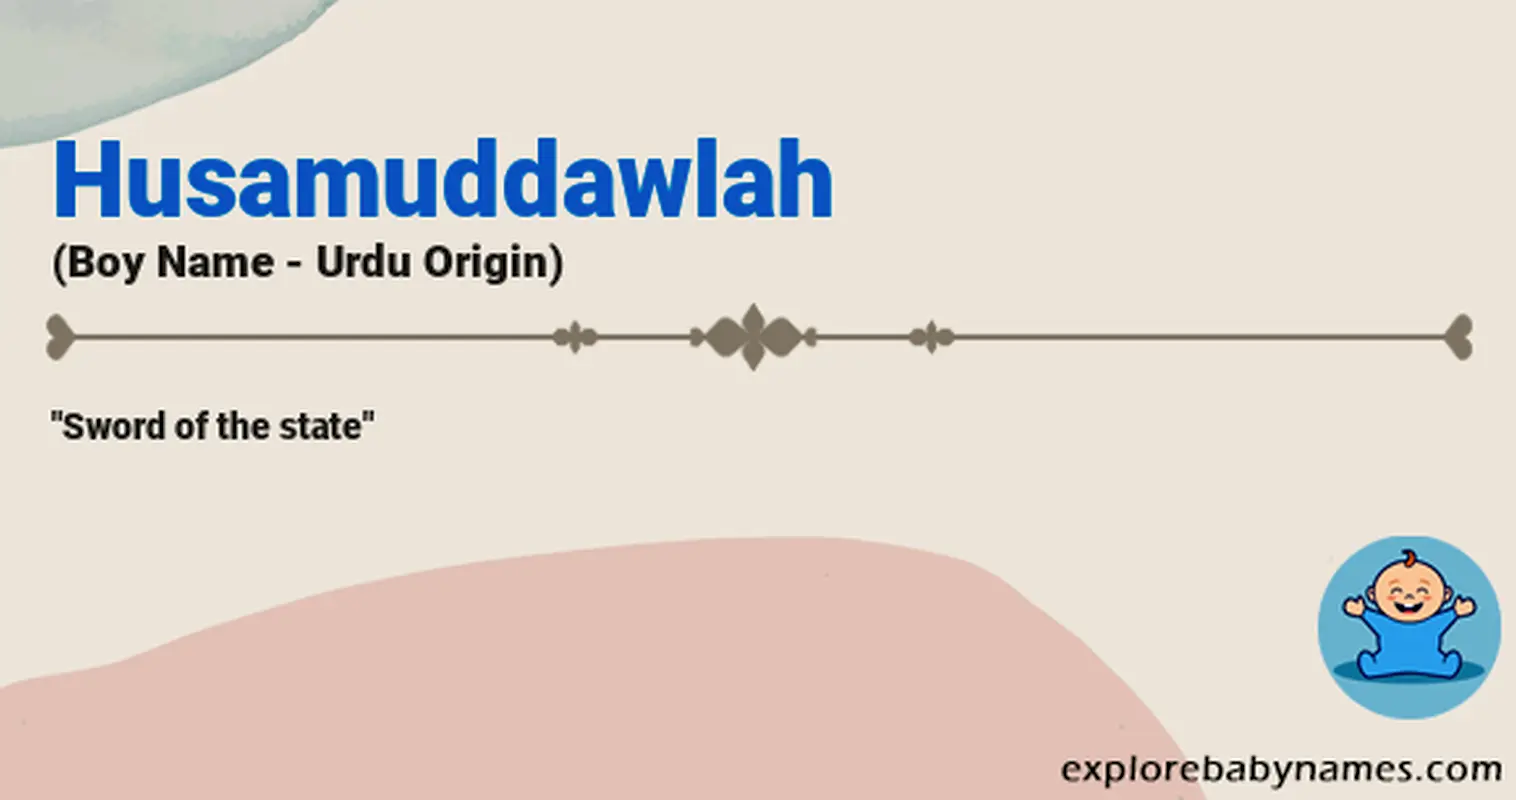 Meaning of Husamuddawlah